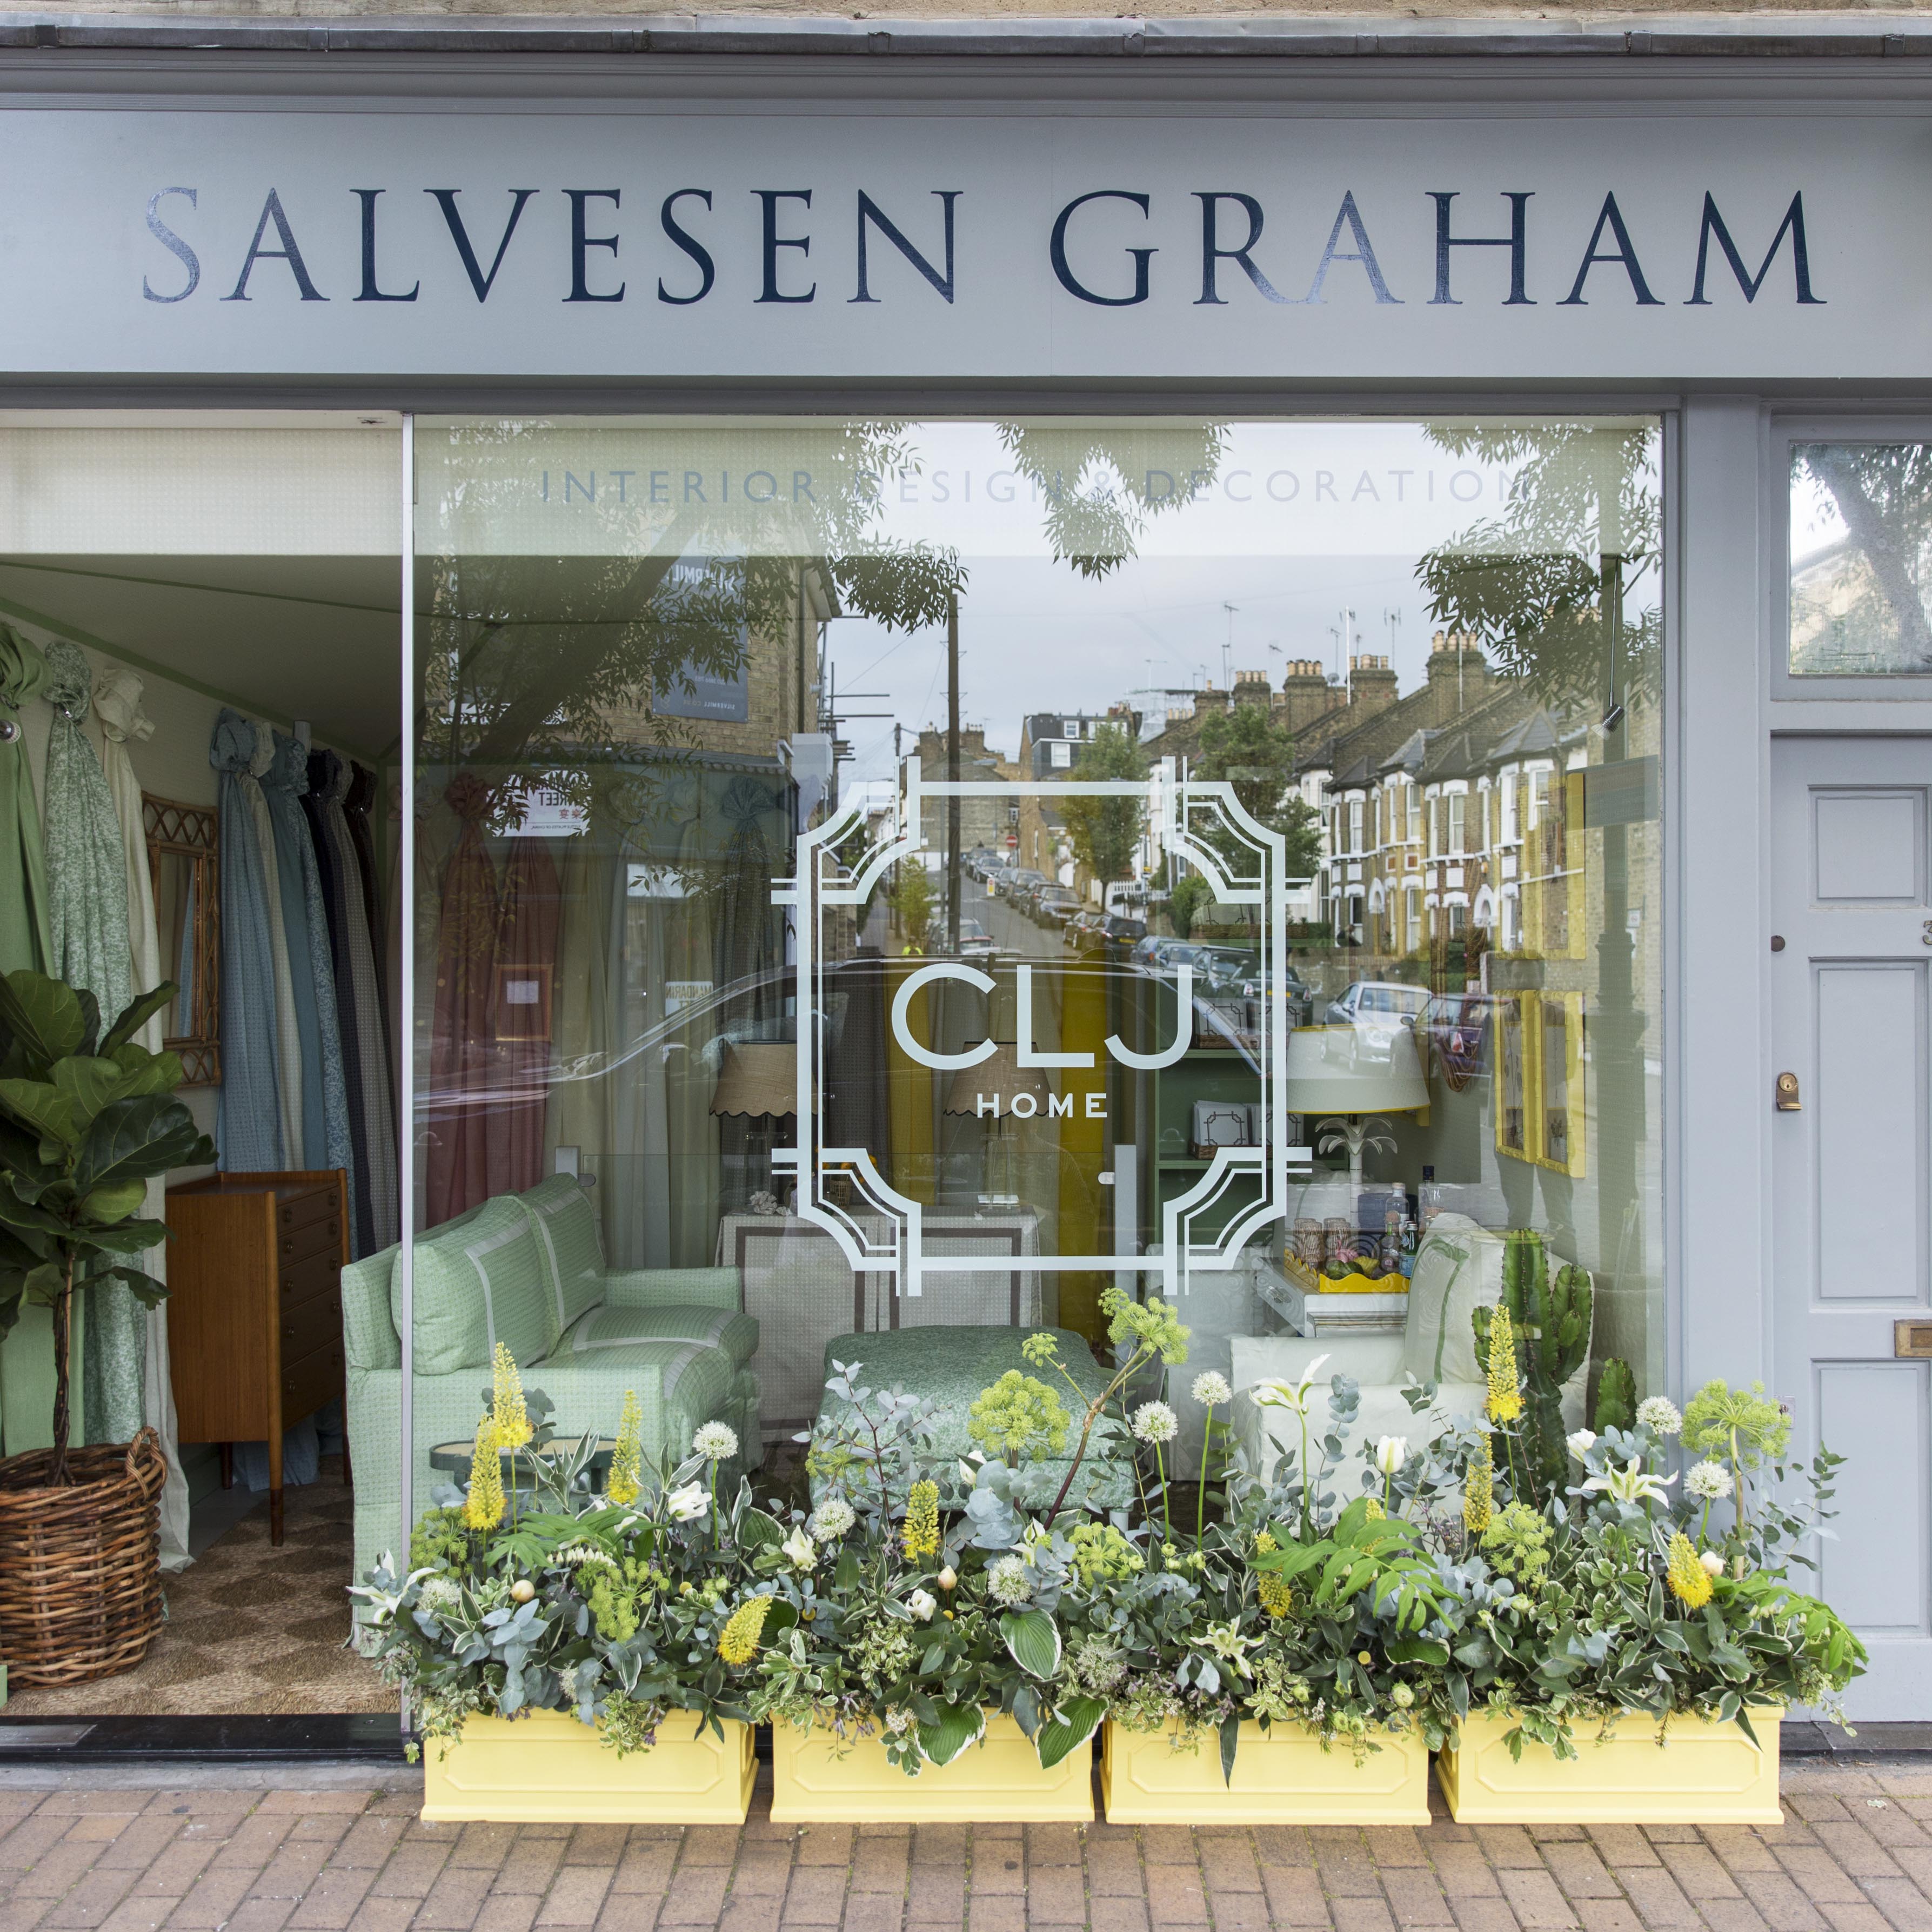 CLJ Home takes over Salvesen Graham's Showroom